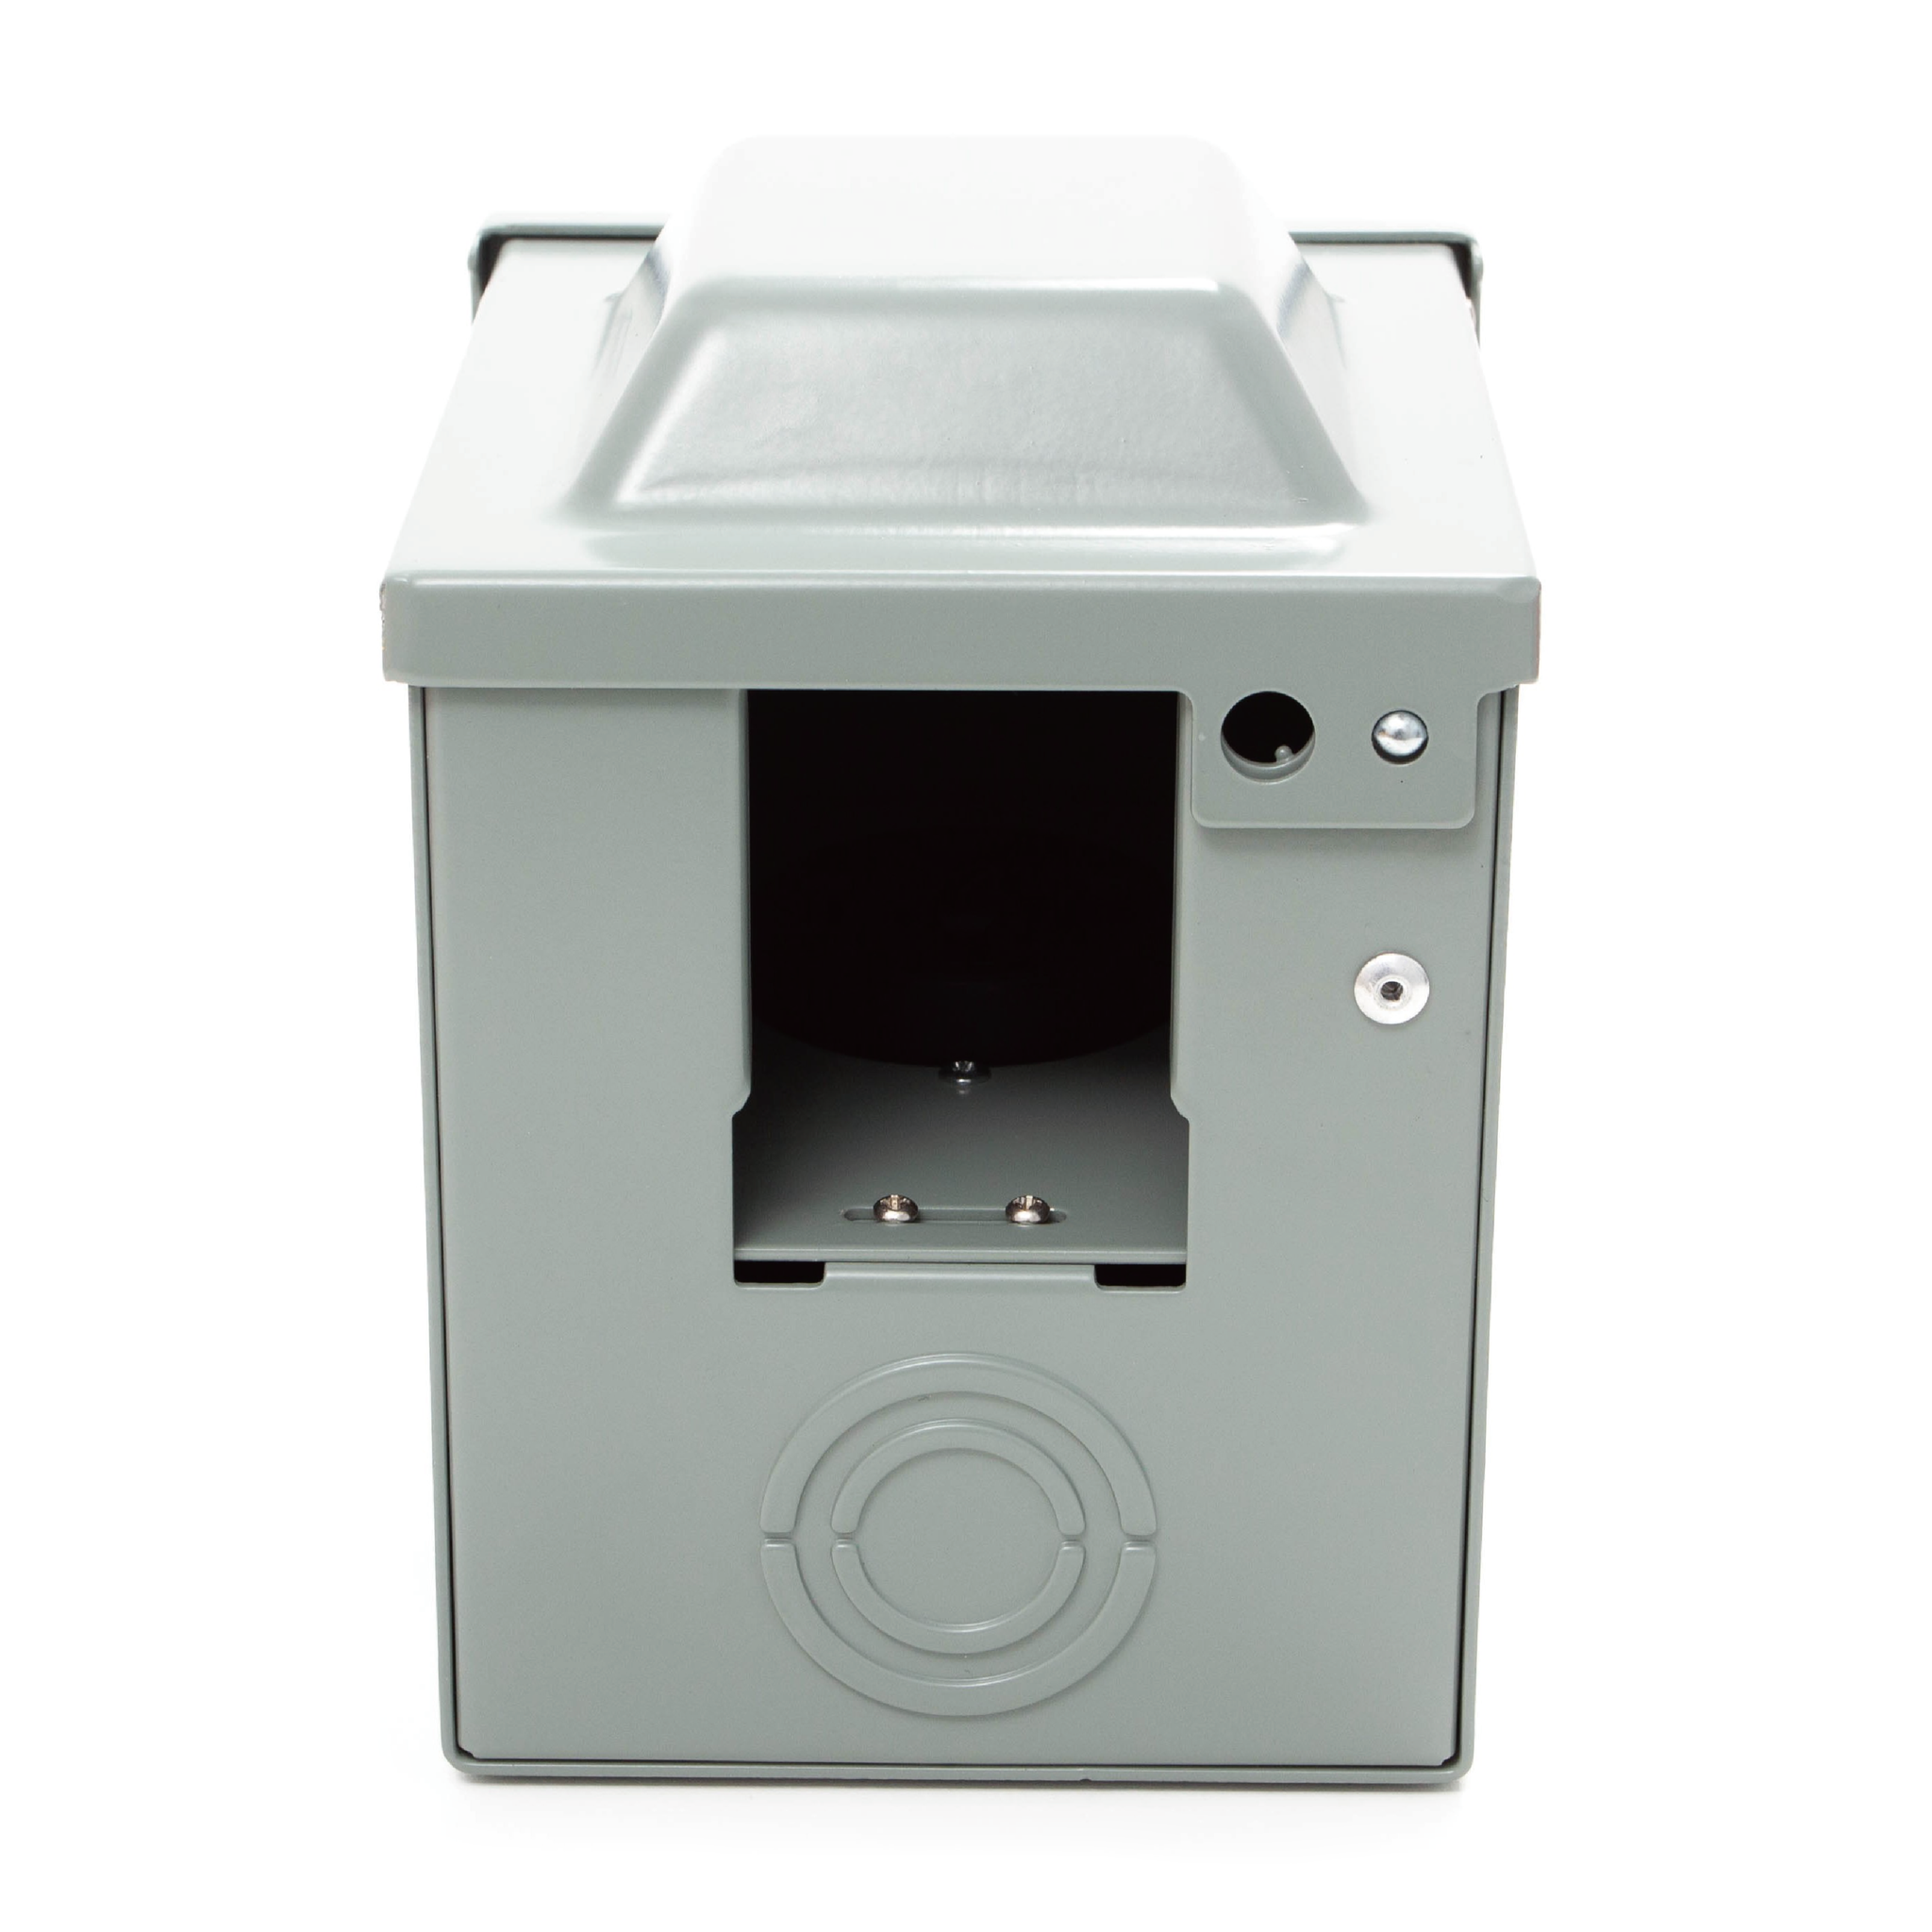 Sintron RV Power Outlet Box, 30 Amp 125 Volt, Enclosed Lockable